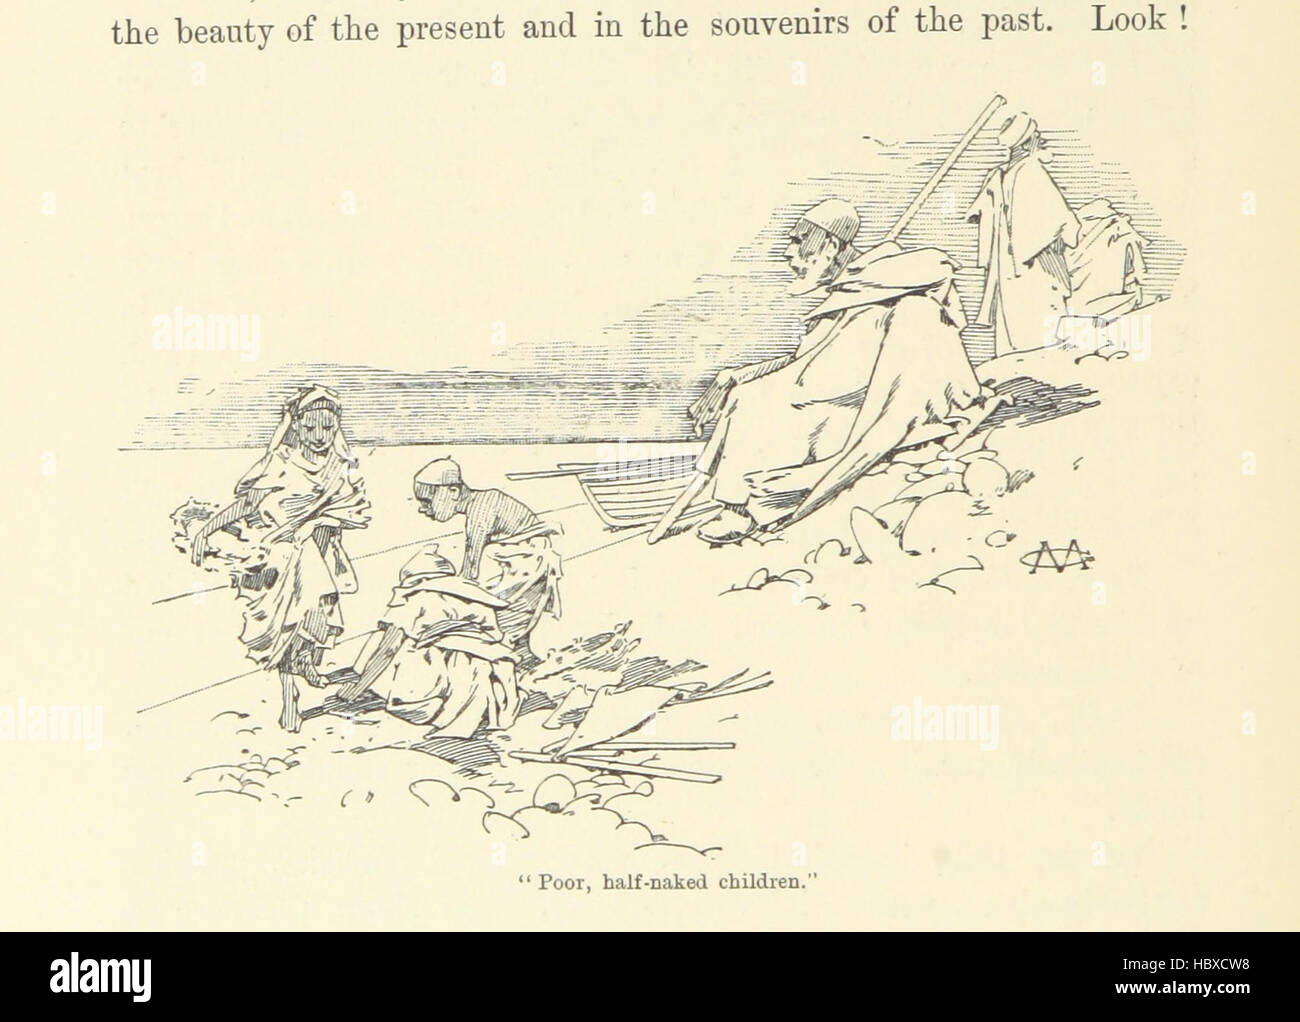 Bild von Seite 124 von "The Land der Sphinx... Mit... Illustrationen usw. "Bild von Seite 124 von" The Land of die Stockfoto